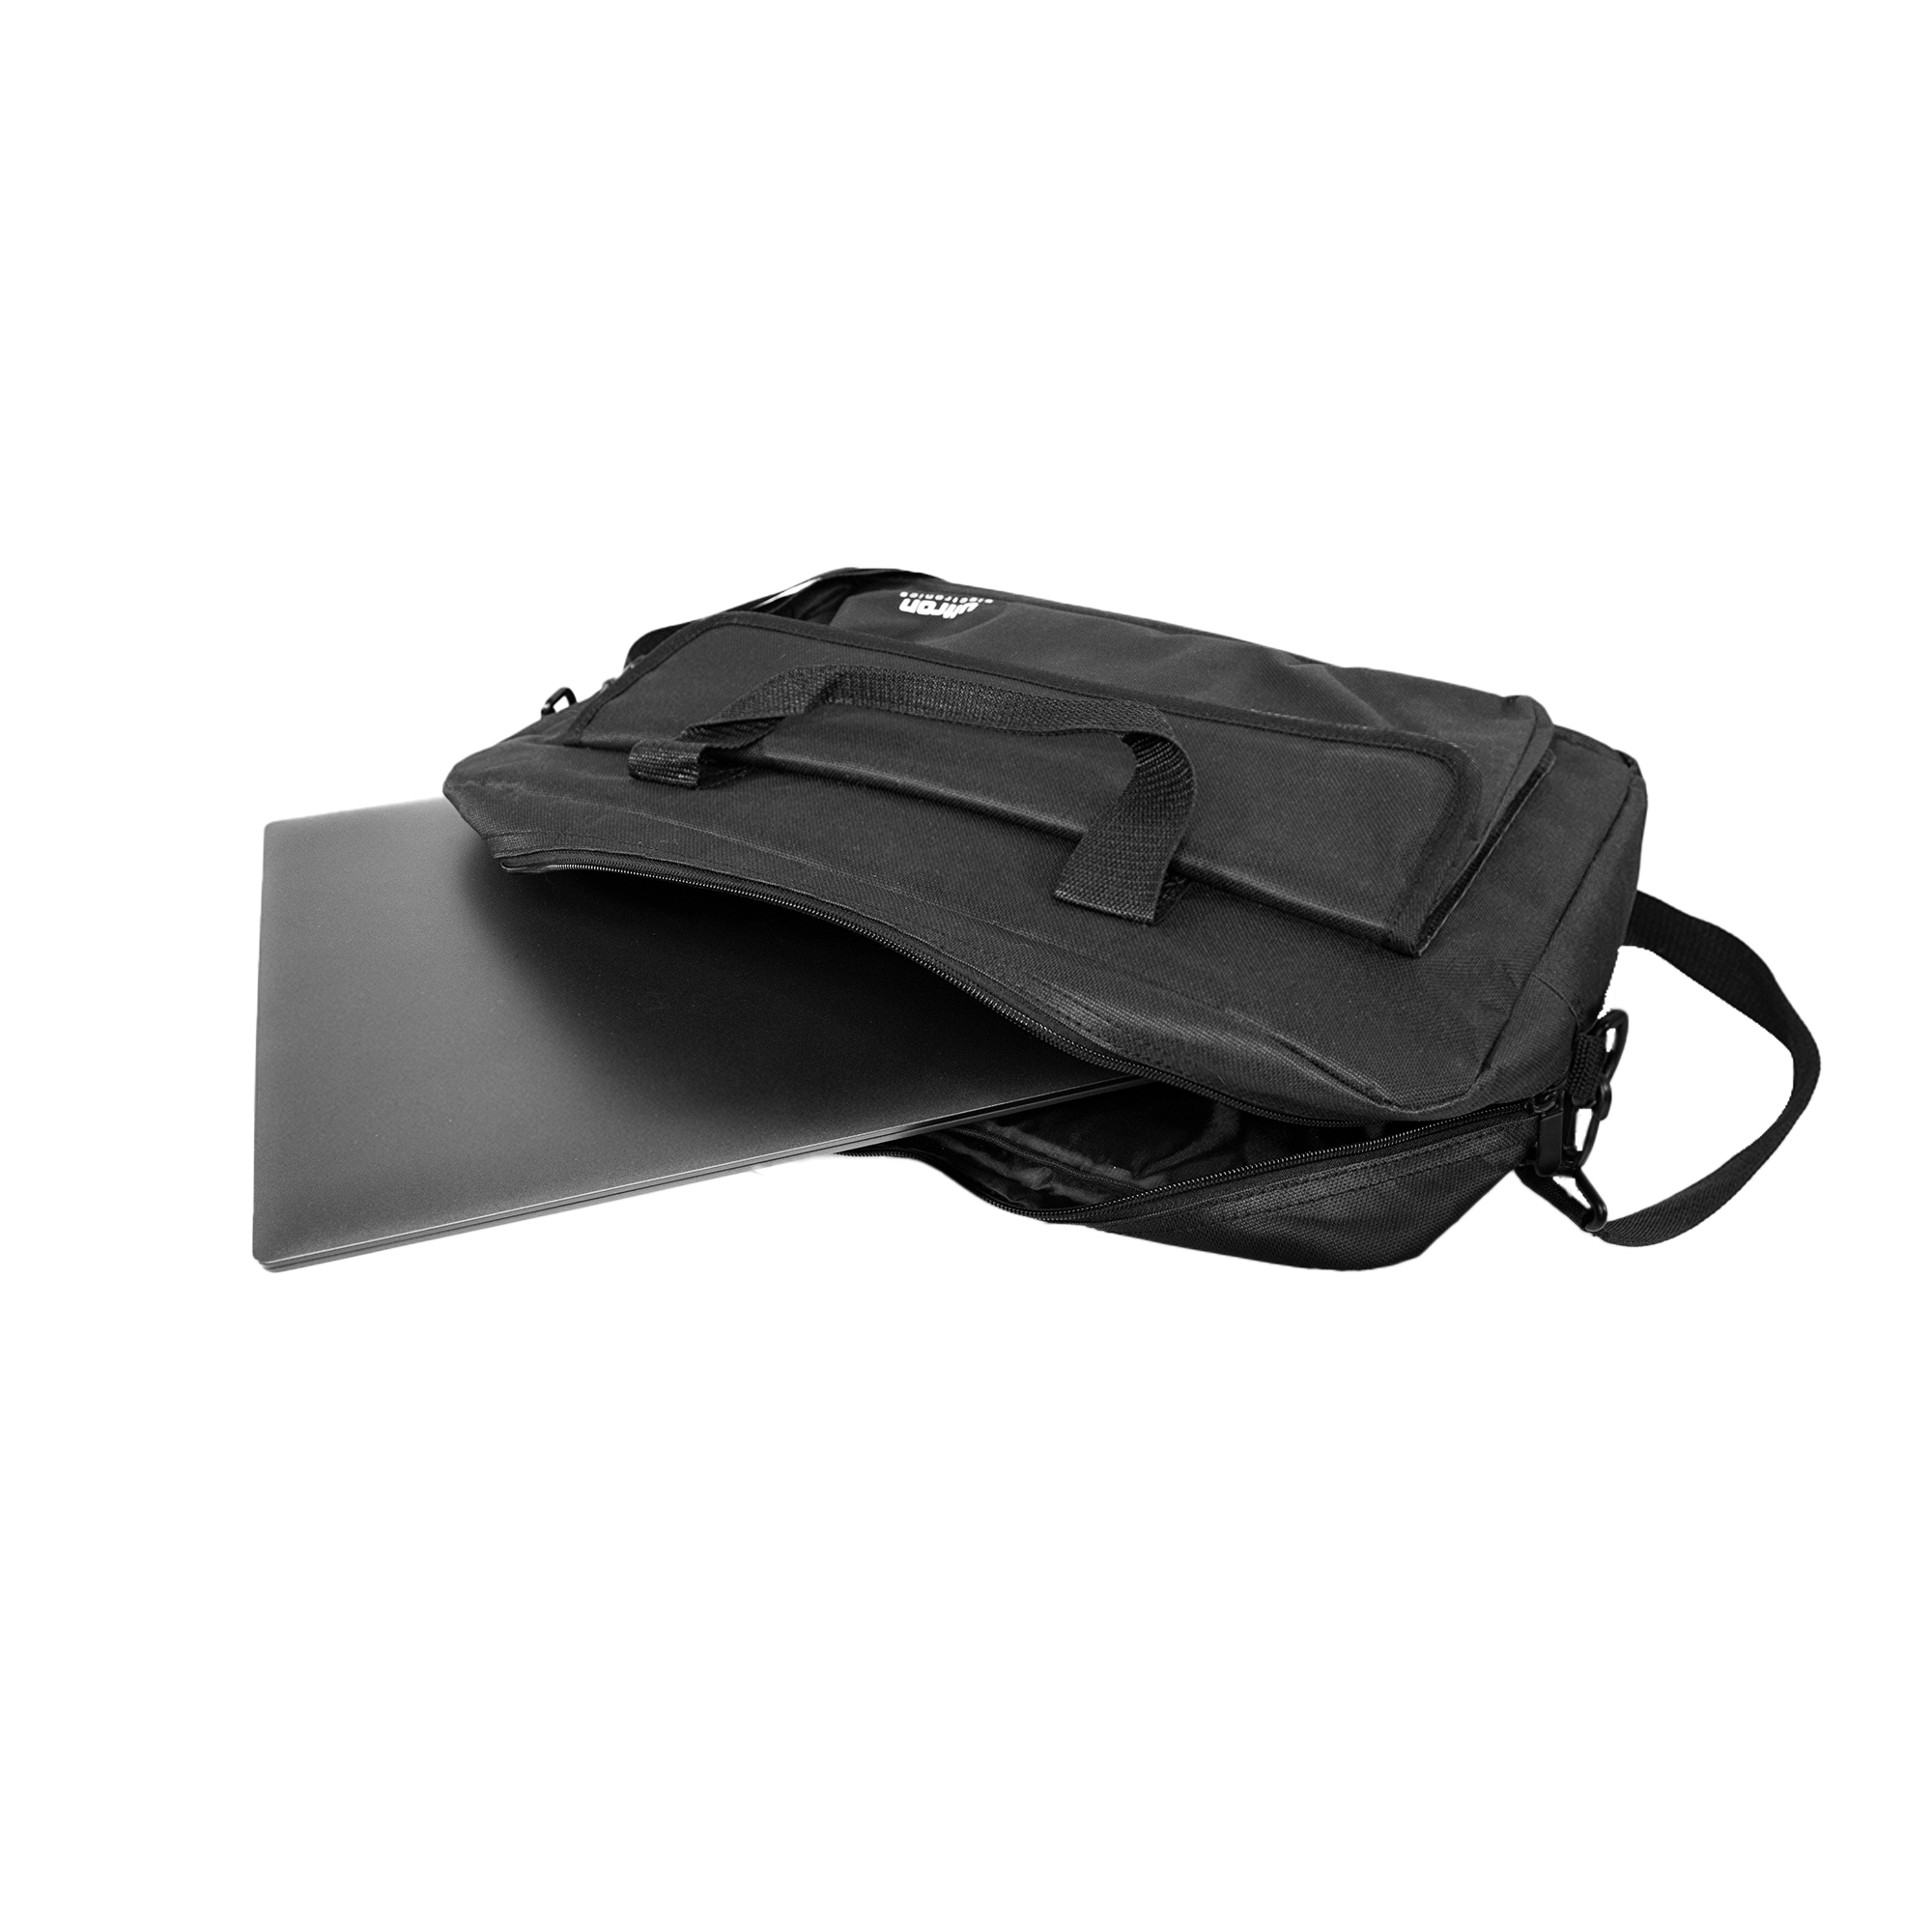 ULTRON Case Basic 15,6\'\' Notebook Universal 600D Umhängetasche Schwarz für Polyester, Tasche